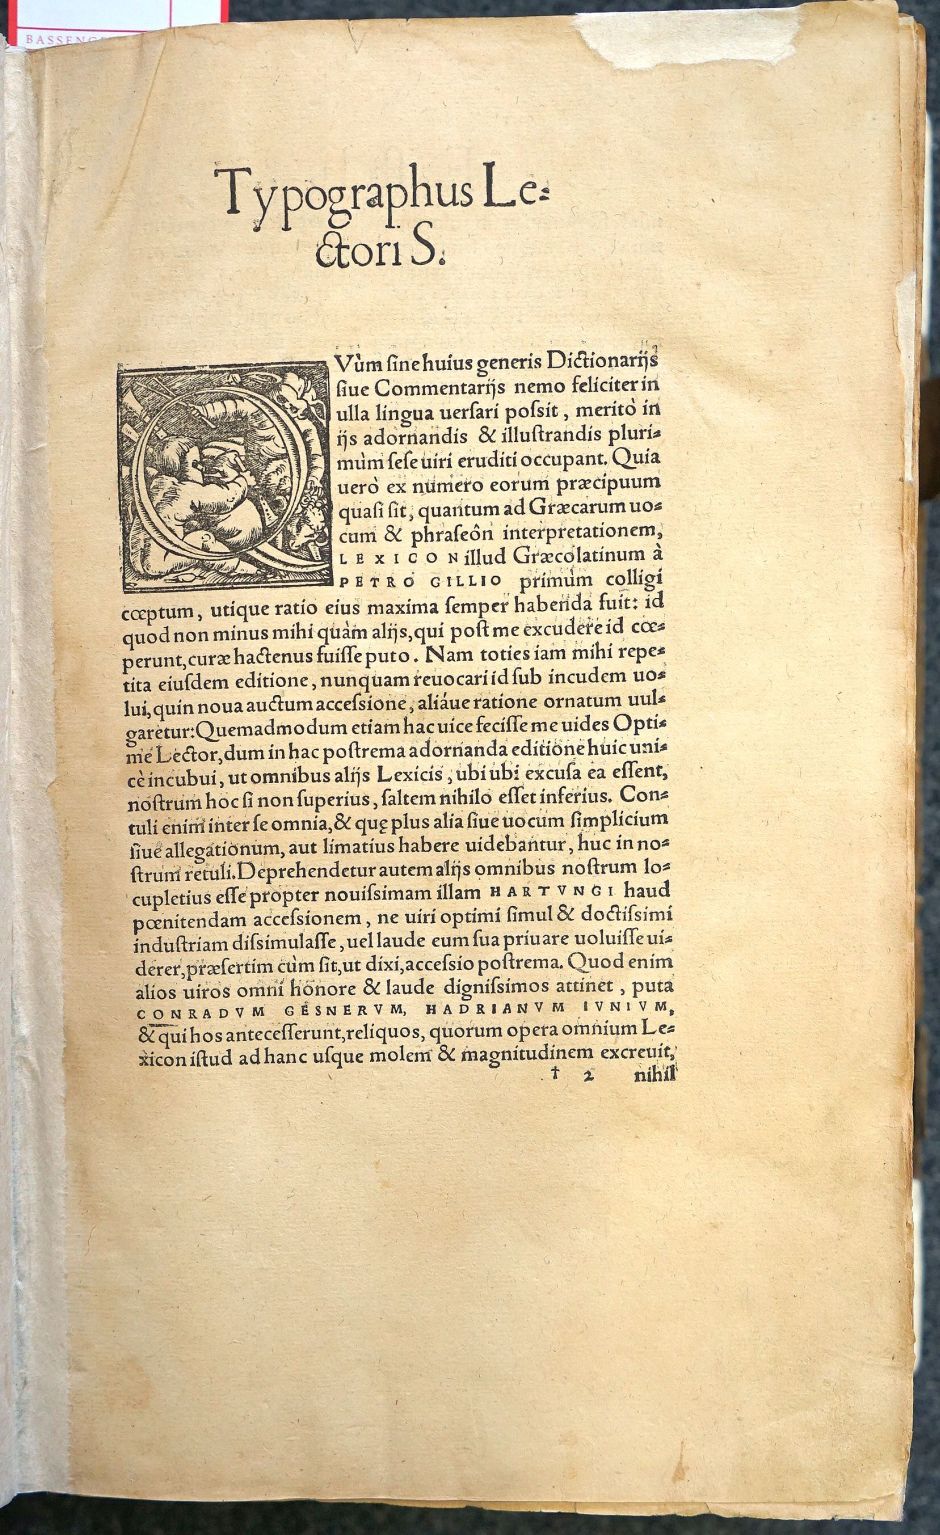 Lot 1136, Auction  115, Lexicon hellenoromaïkon, dictionarium graecolatinum 